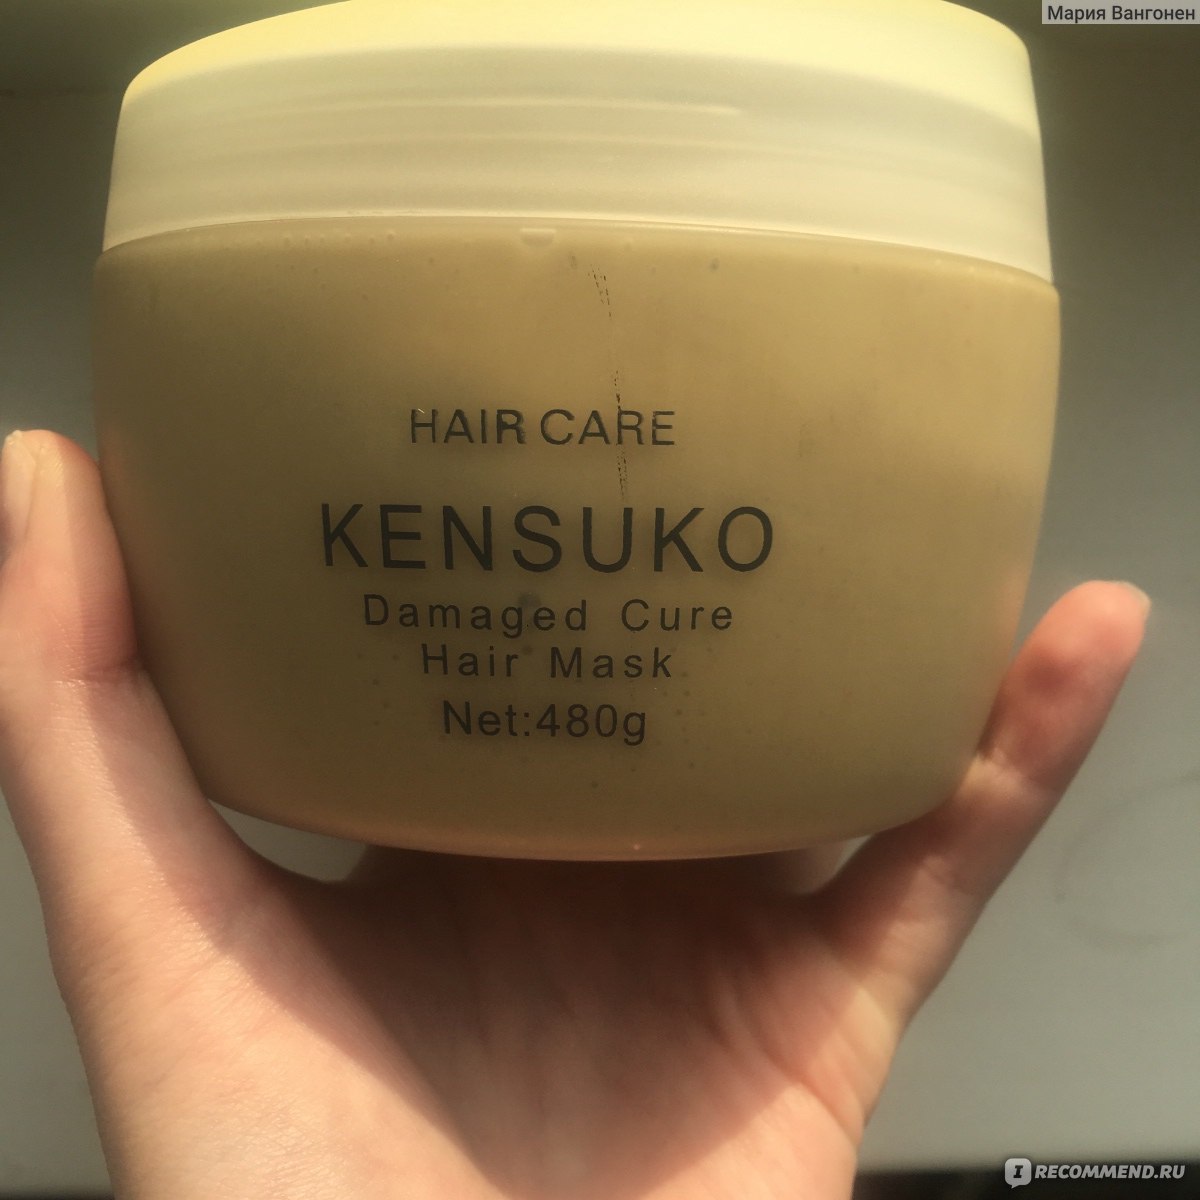 Оттеночный бальзам kensuko. Kensuko Crystal маска. Kensuko маска для поврежденных волос. Kensuko восстанавливающая маска. Kensuko бальзам для волос.